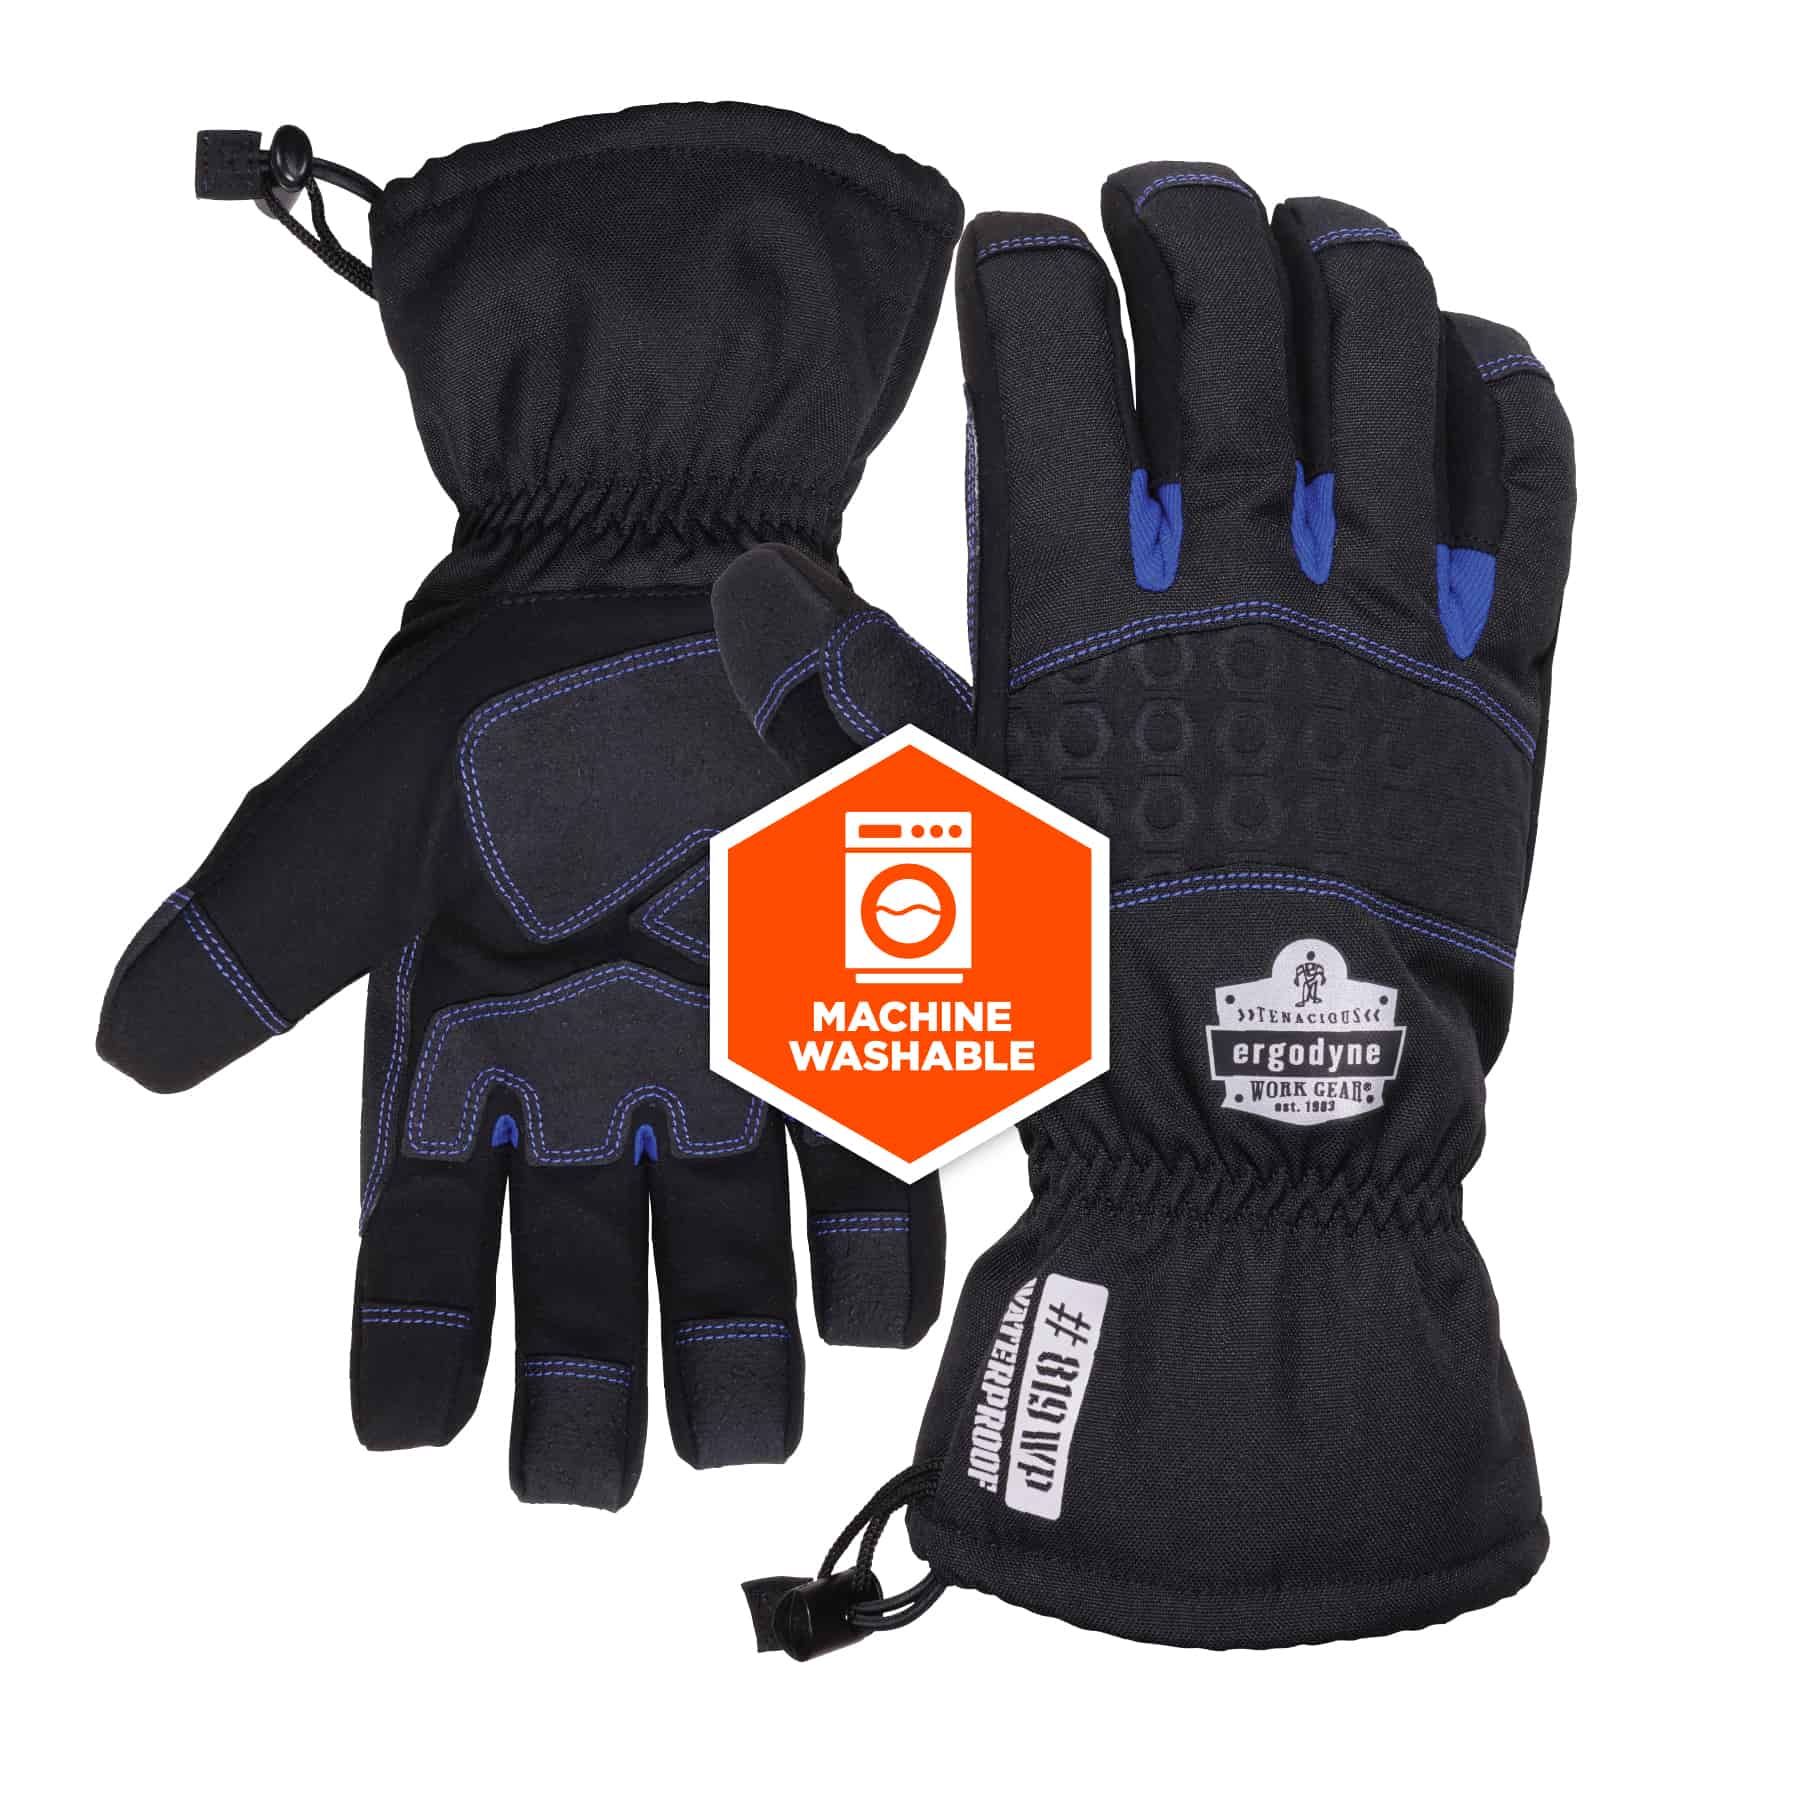 ROSTAING NERINE Waterproof Work Gloves – Comercial Mida